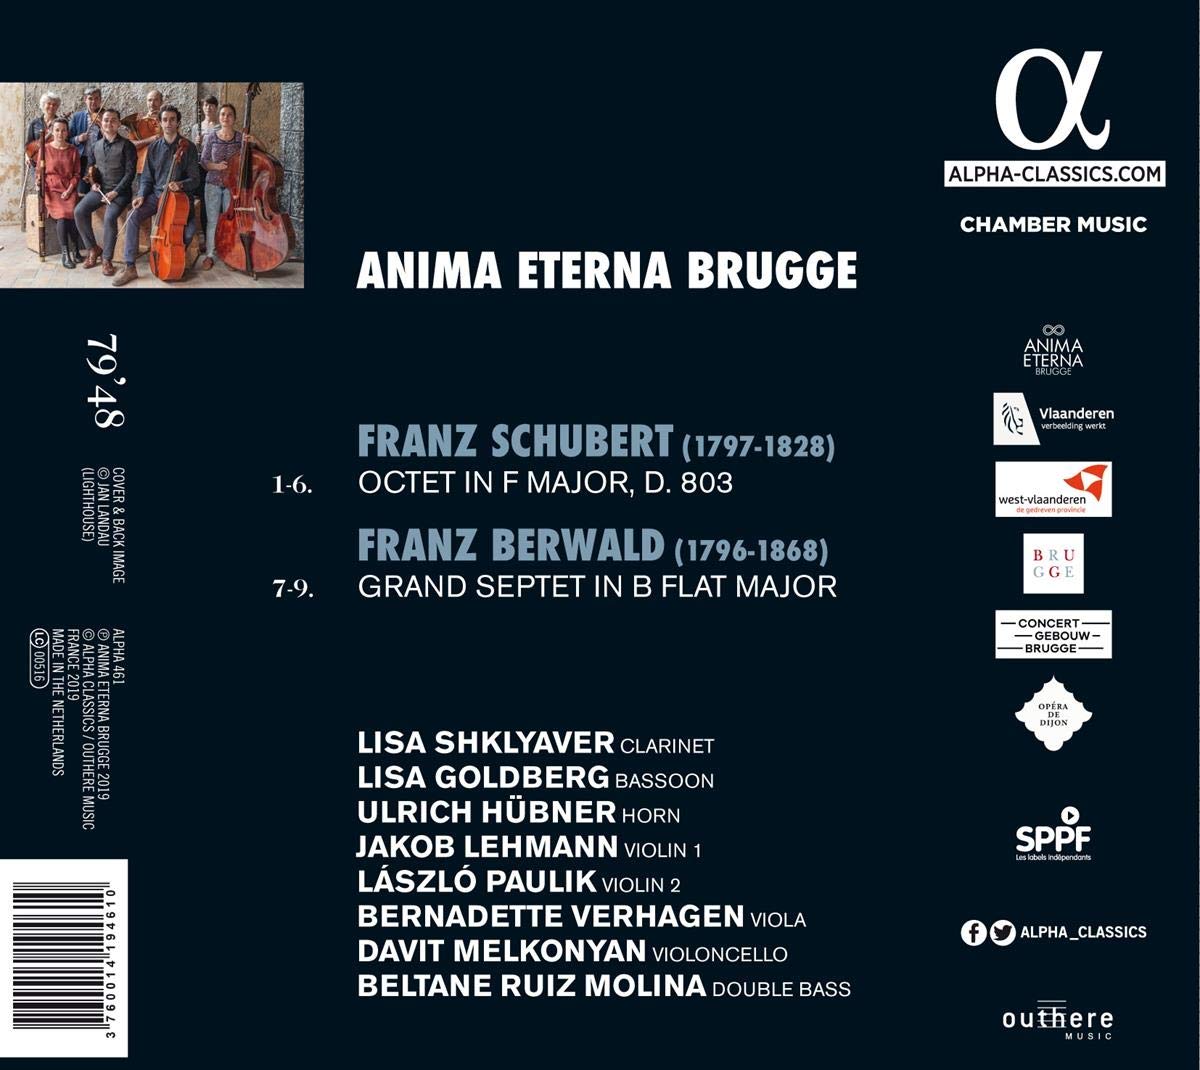 Anima Eterna Brugge 슈베르트 / 프란츠 베르발트: 실내악 작품집 (Schubert / Franz Berwald: Chamber Music)